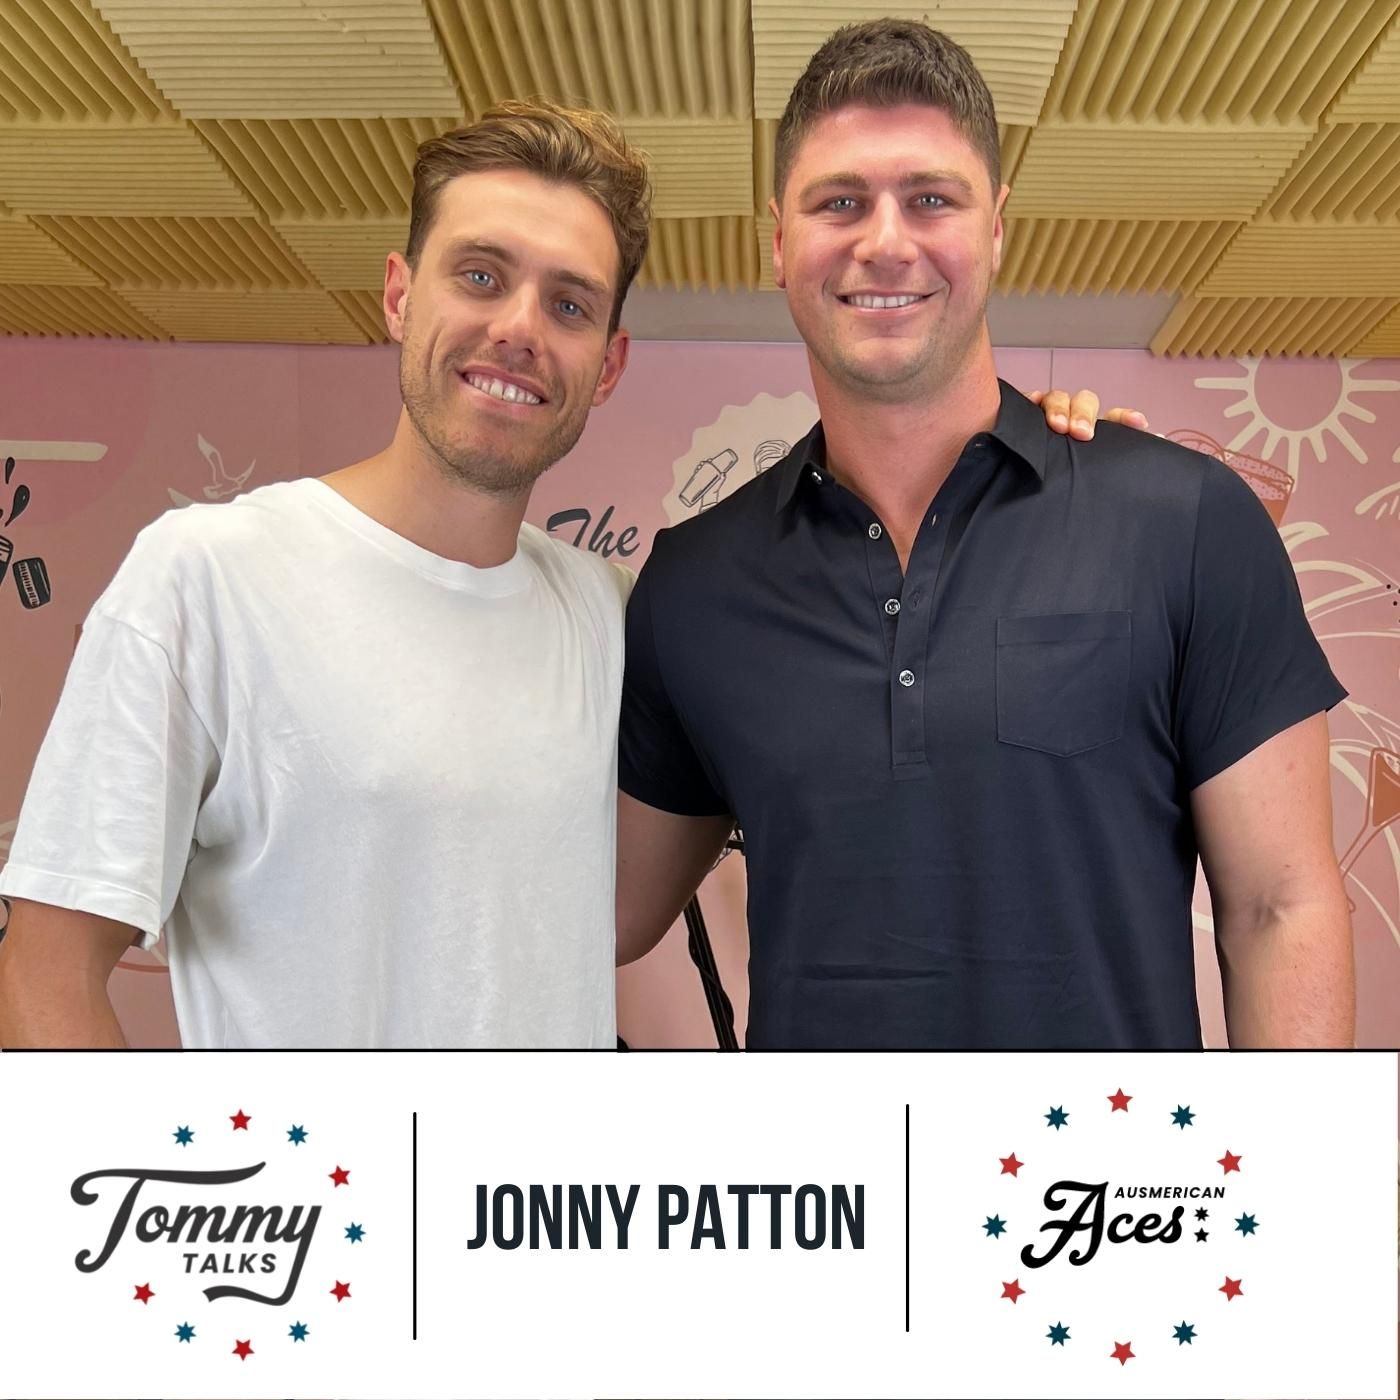 Tommy Talks with Jonny Patton